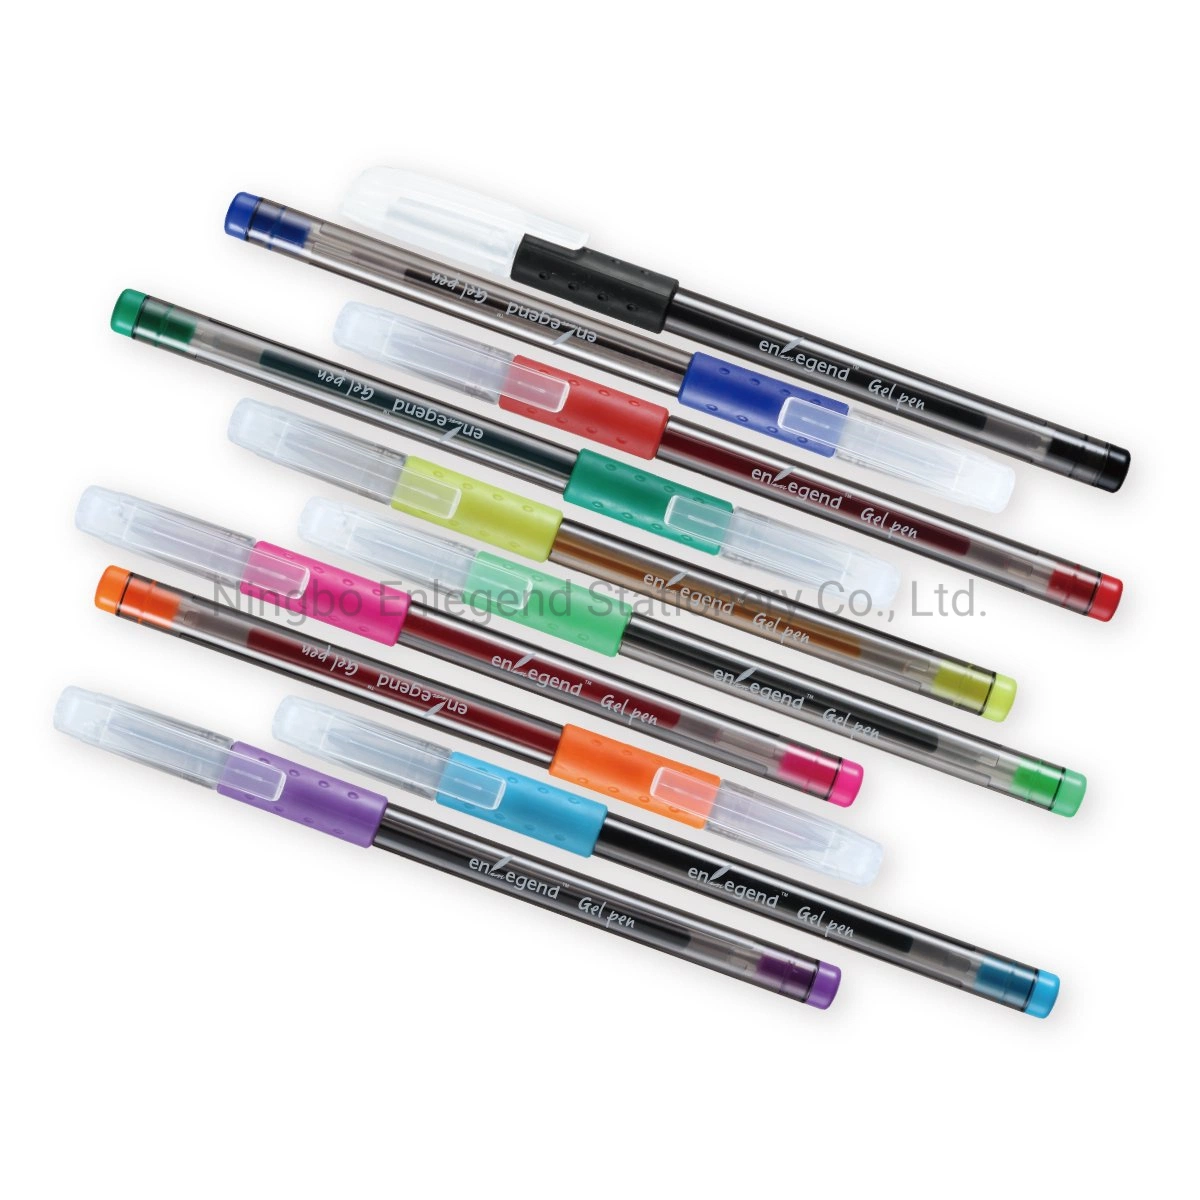 Ex9106 Dom Promocional tinta gel de cores vivas e um conjunto de canetas